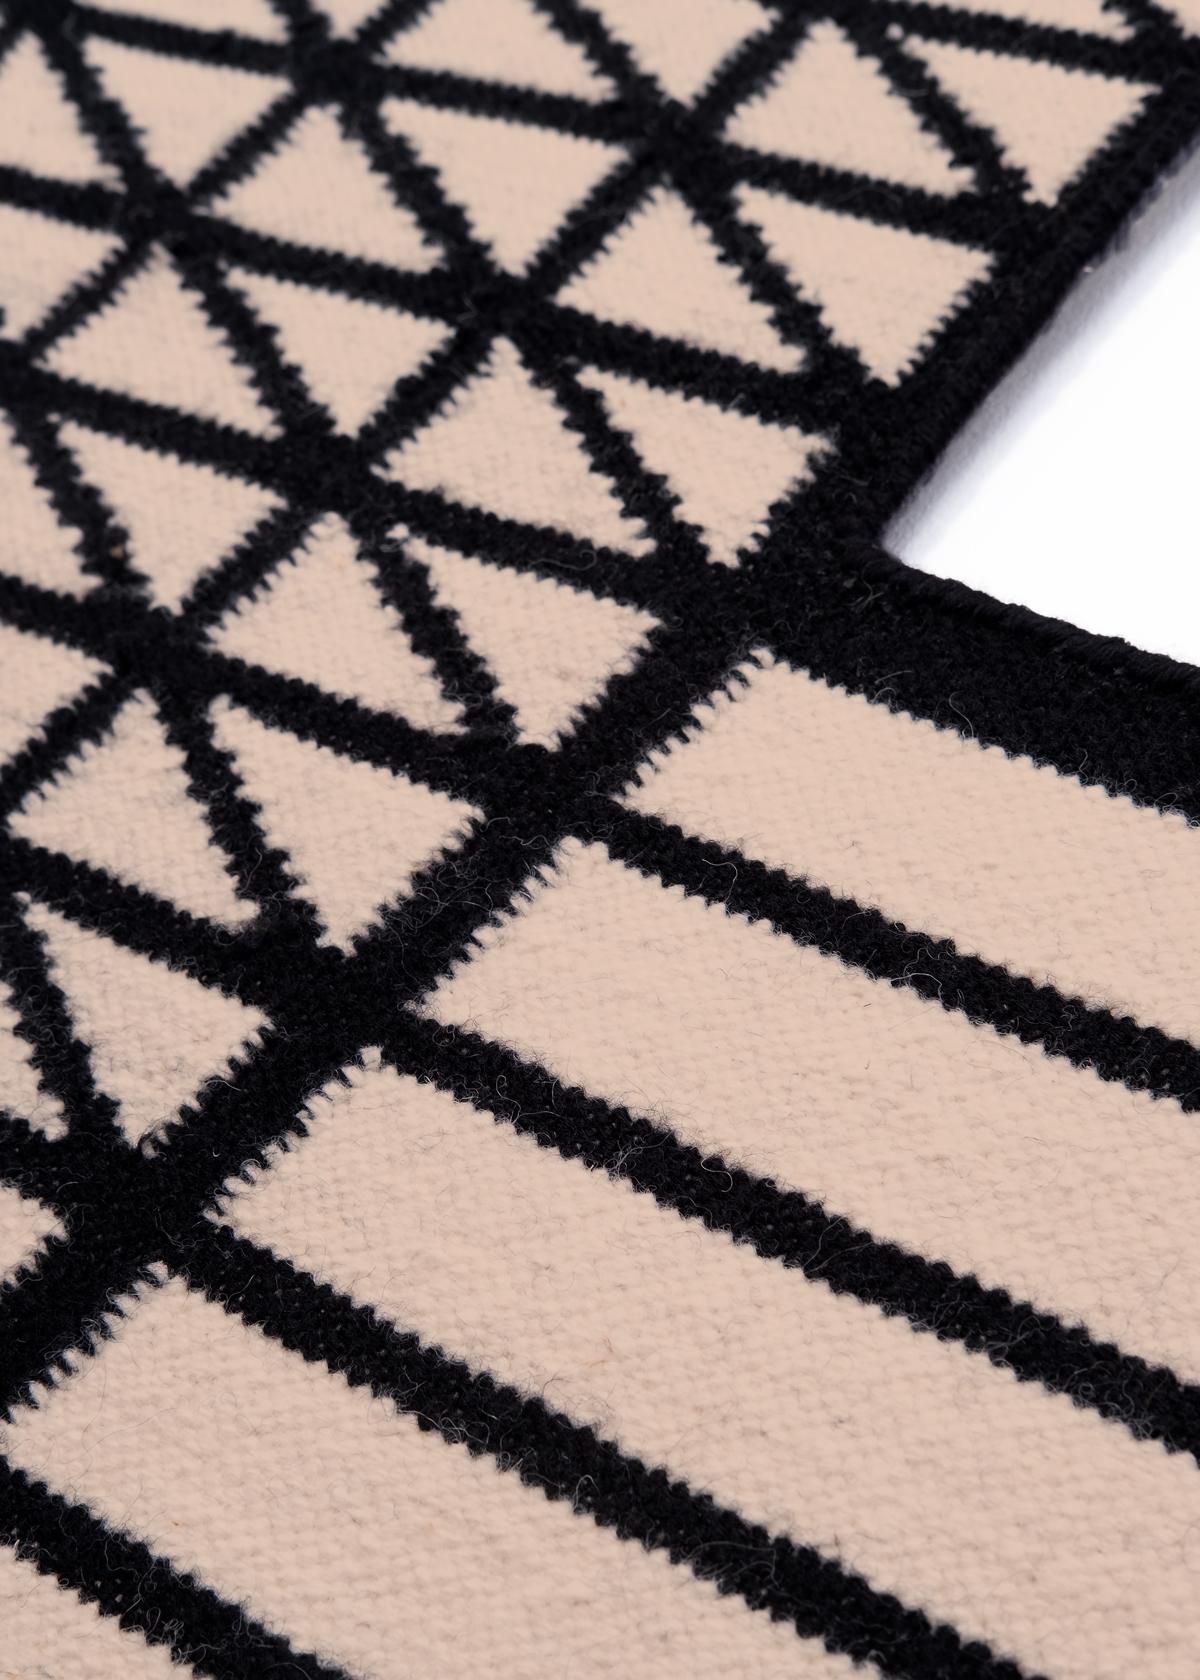 Kelim Hatch IV – Moderner Design-Teppich aus Wolle und Baumwolle, handgewebt von Paolo Giordano

Kilim Hatch IV

Die I+I Collection nähert sich den Kilim-Teppichen mit einer zeitgenössischen Geometrie, die das Erbe der vergangenen Tradition bewahrt.